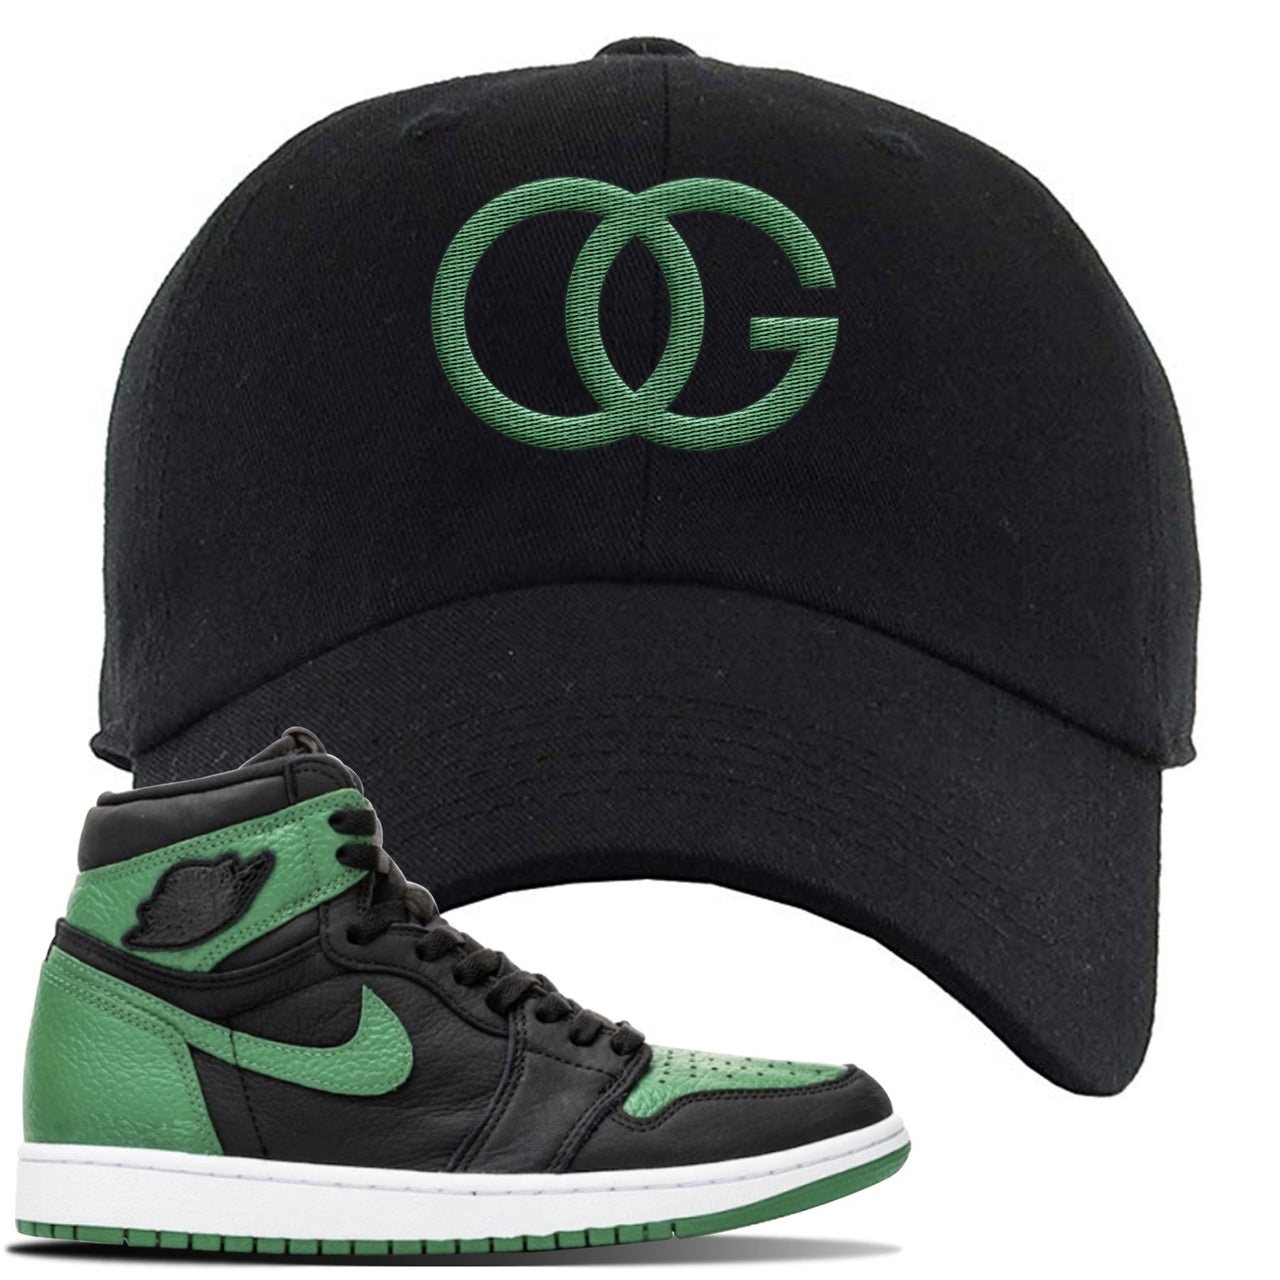 Jordan 1 Retro High OG Pine Green Gym Sneaker Black Dad Hat | Hat to match Air Jordan 1 Retro High OG Pine Green Gym Shoes | OG